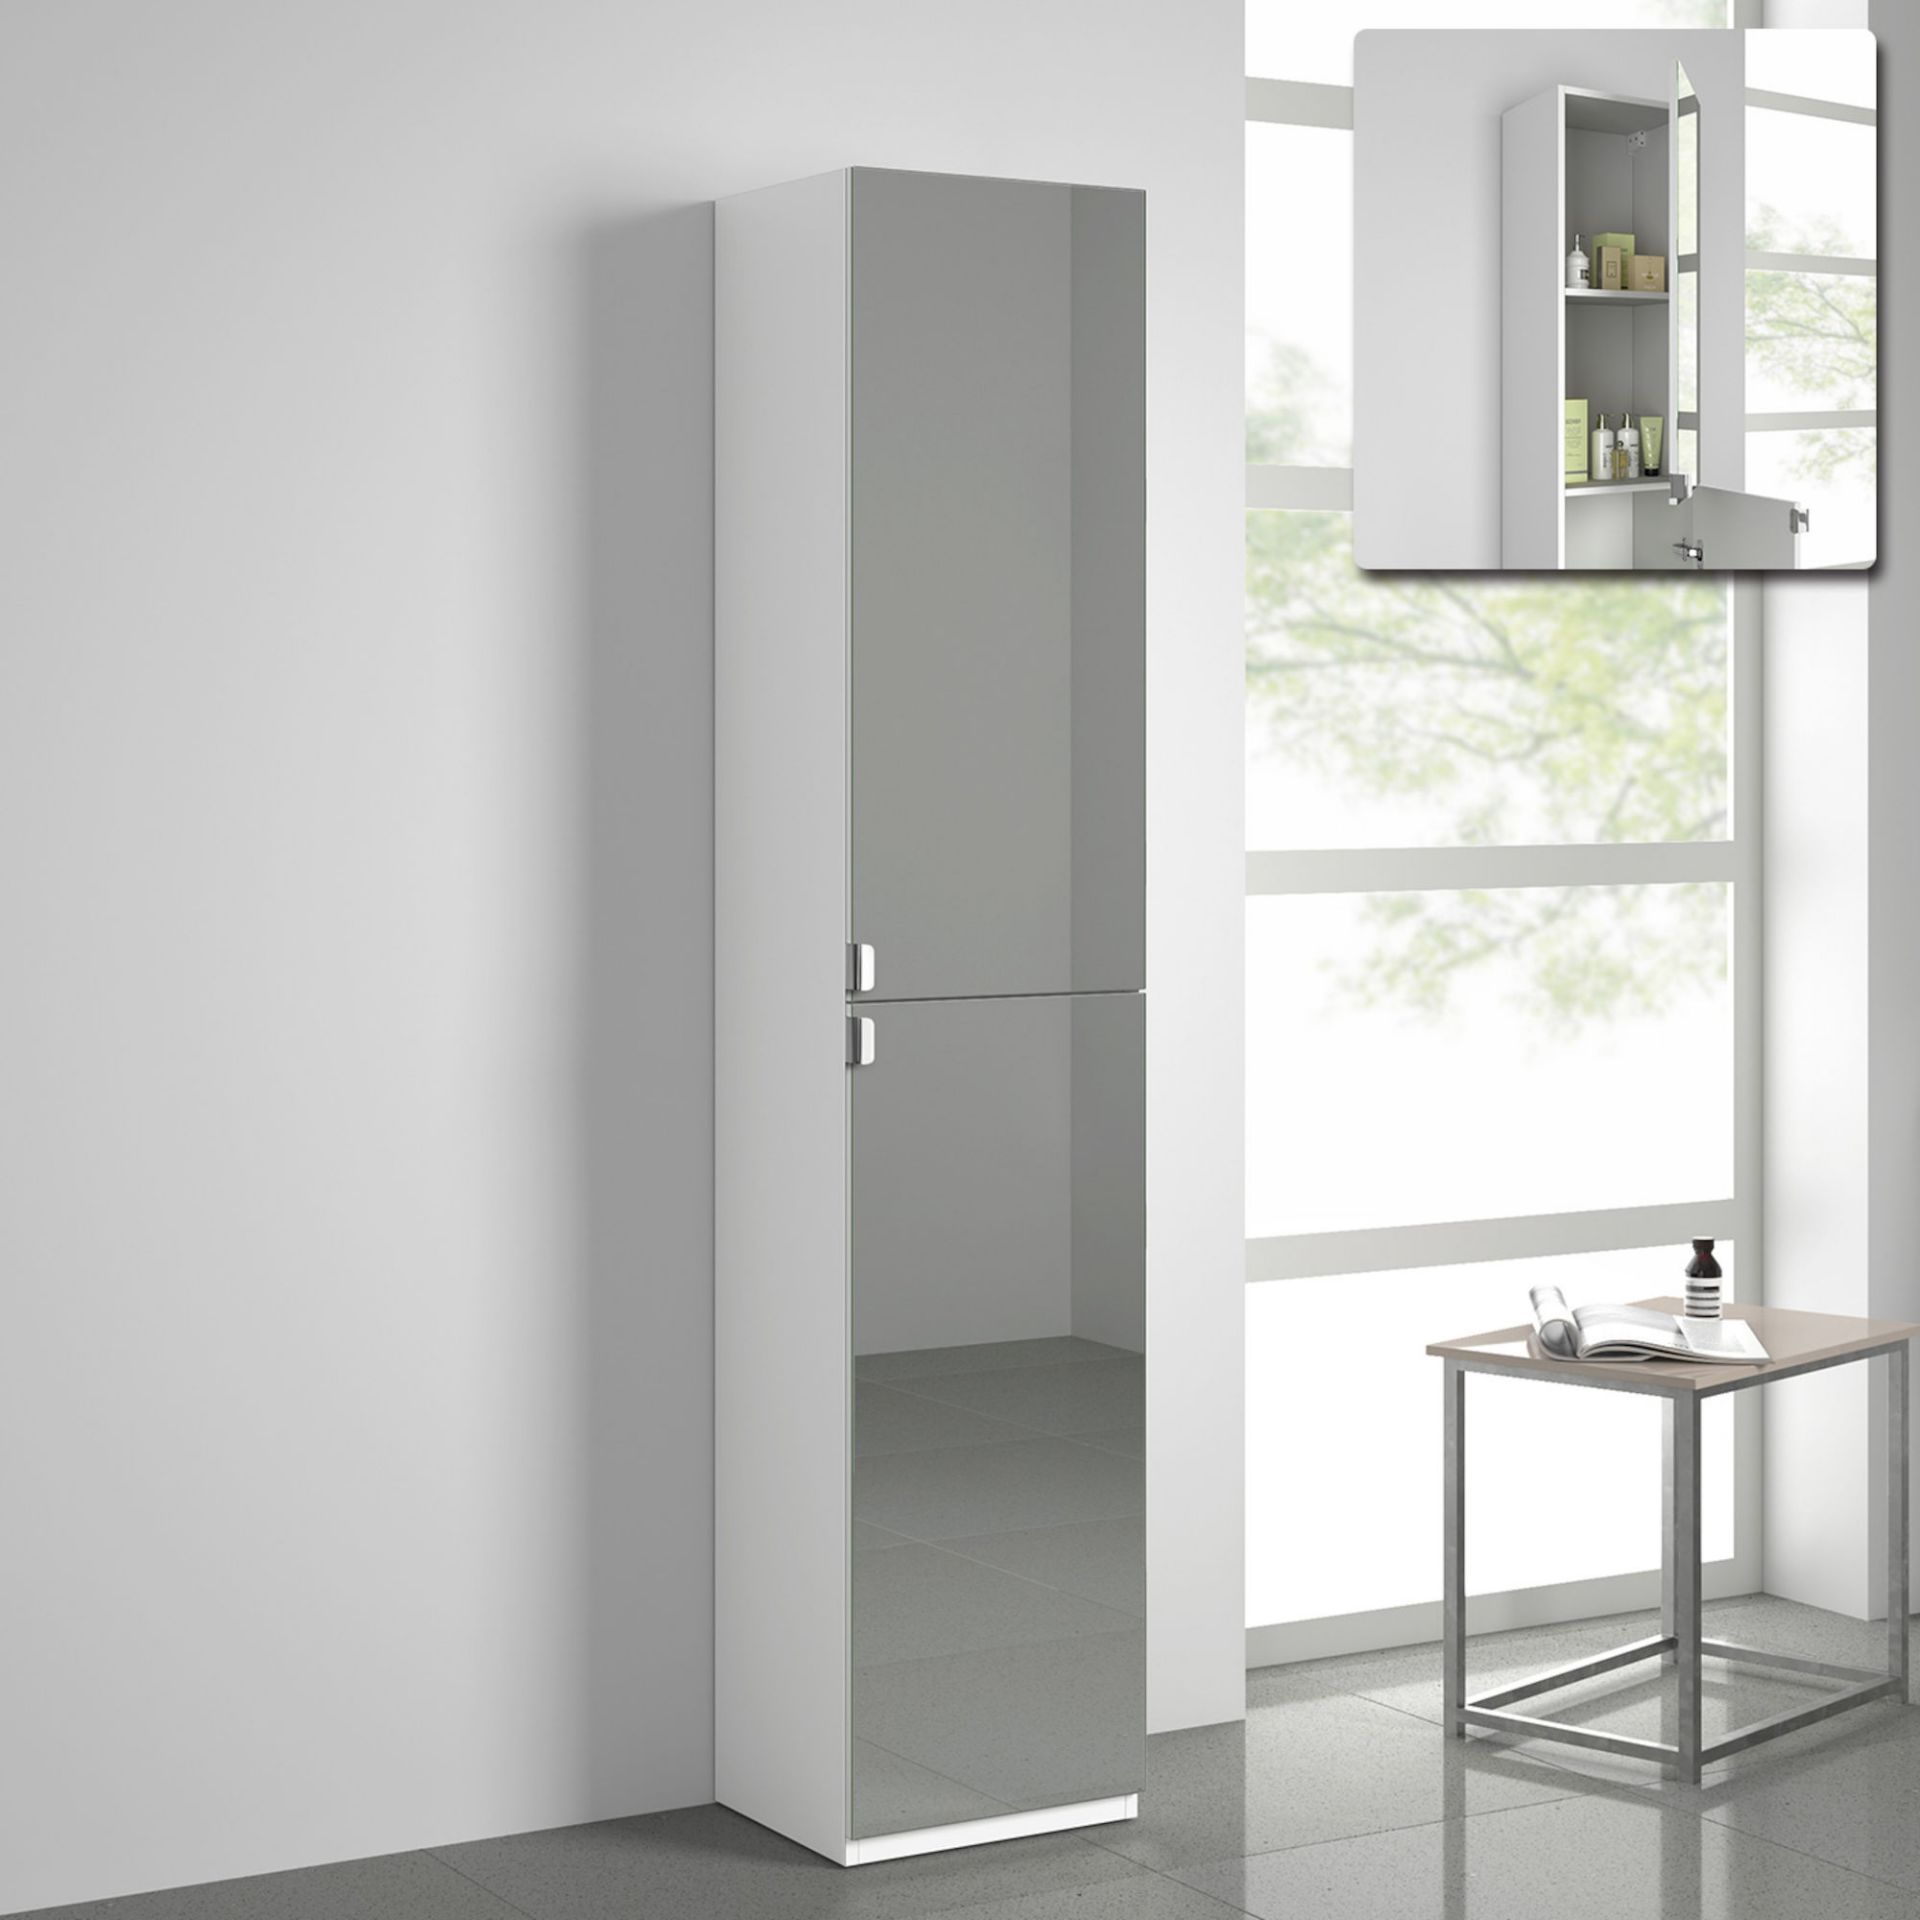 (MT58) 1700x350mm Mirrored Door Matte White Tall Storage Cabinet - Floor Standing. RRP £249.99.